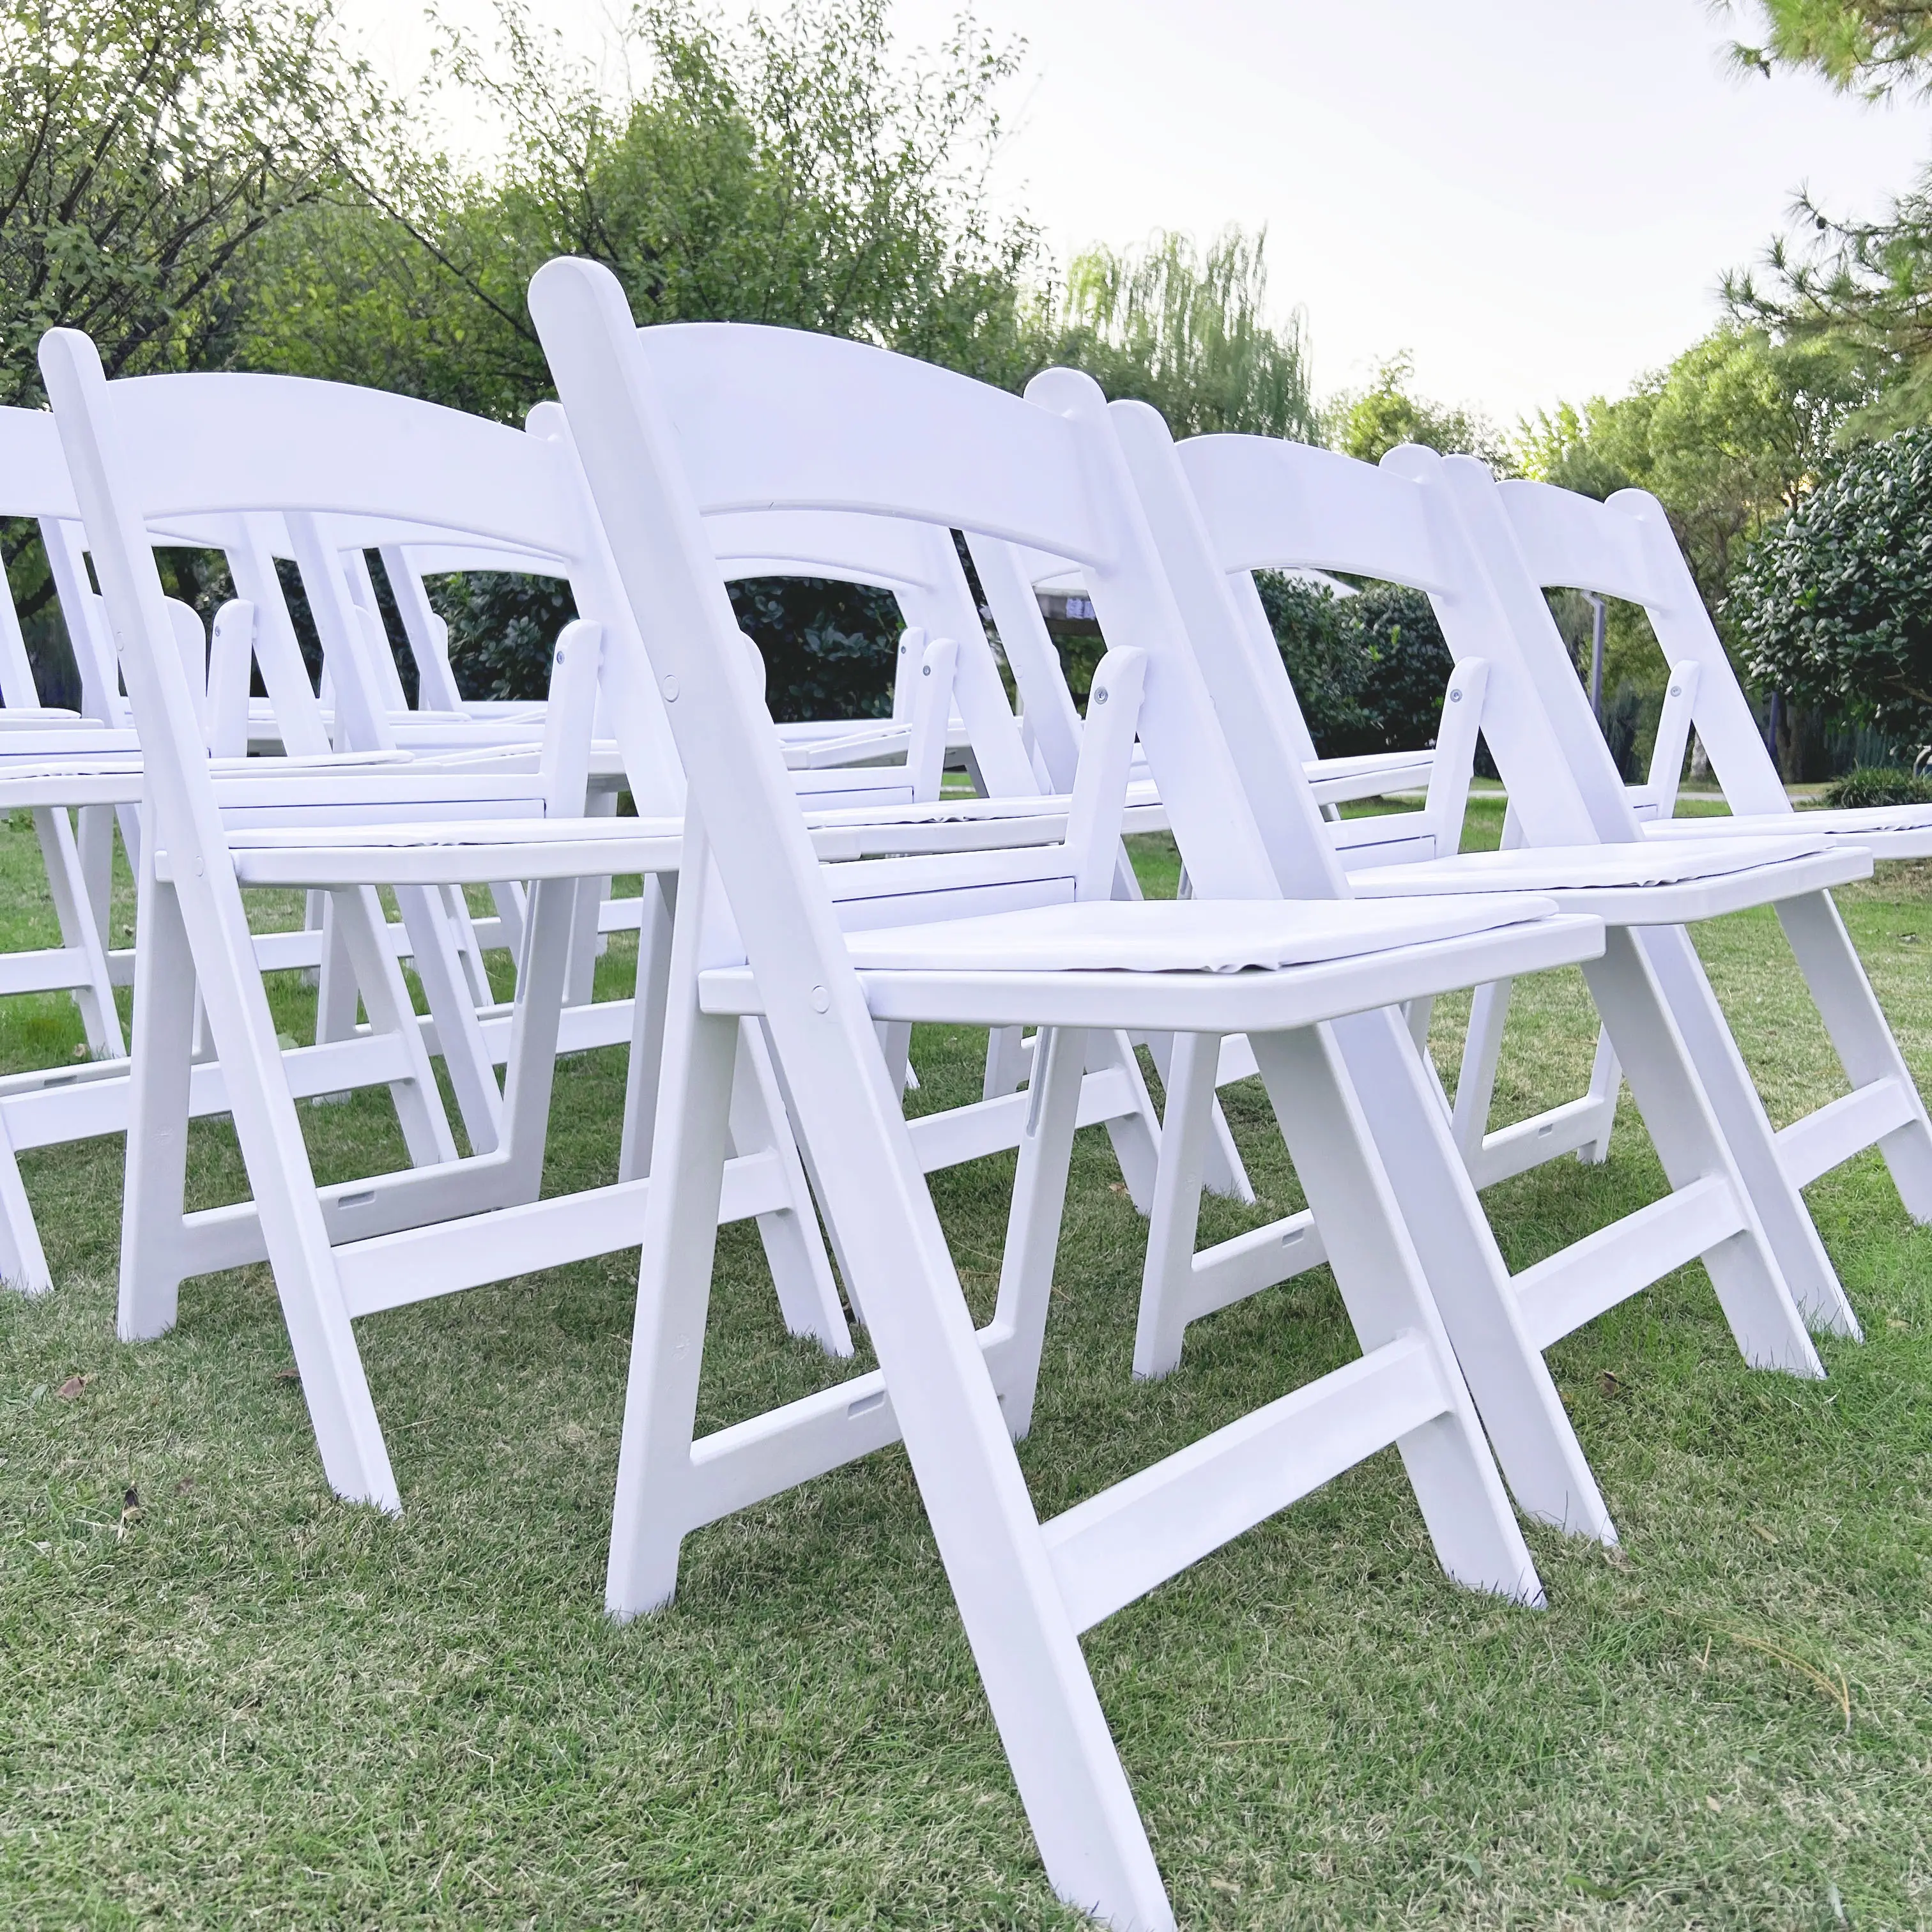 เก้าอี้พับวิมเบิลดันพลาสติกเรซินสีขาวเฟอร์นิเจอร์สำหรับงานเลี้ยงงานแต่งงานโรงแรมร้านอาหารในสวน